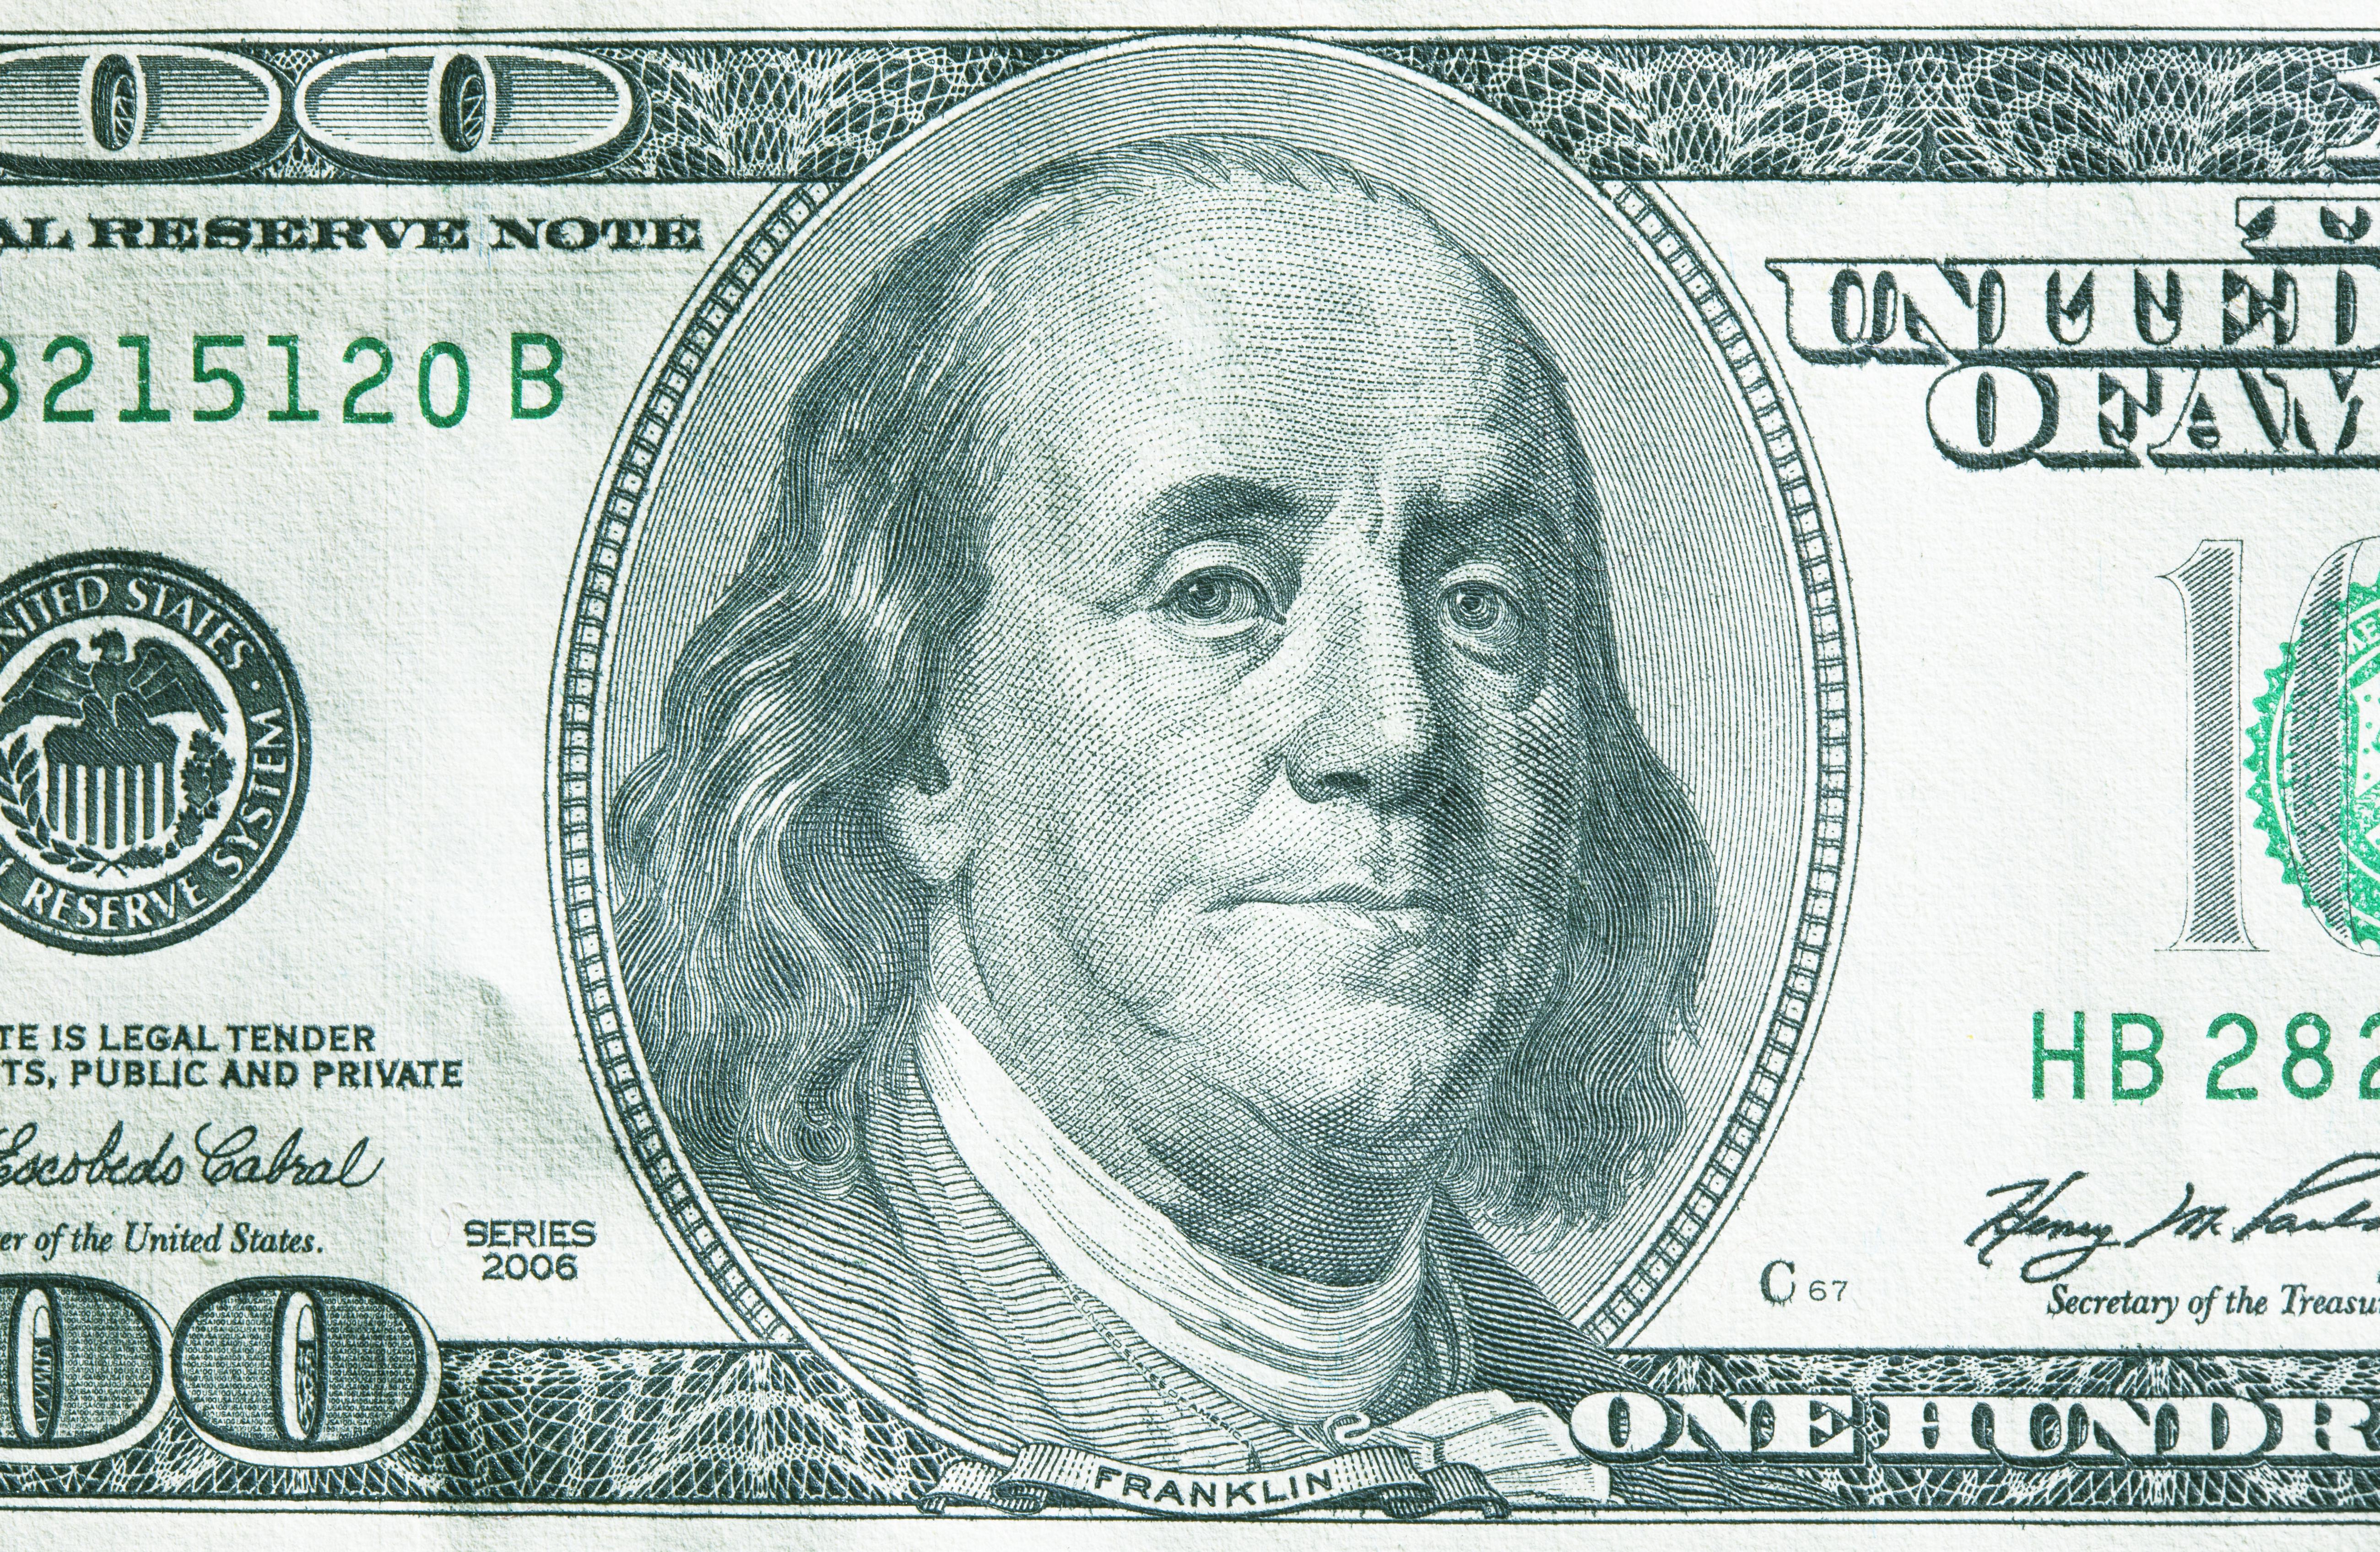 US 100 dollar bill, close-up